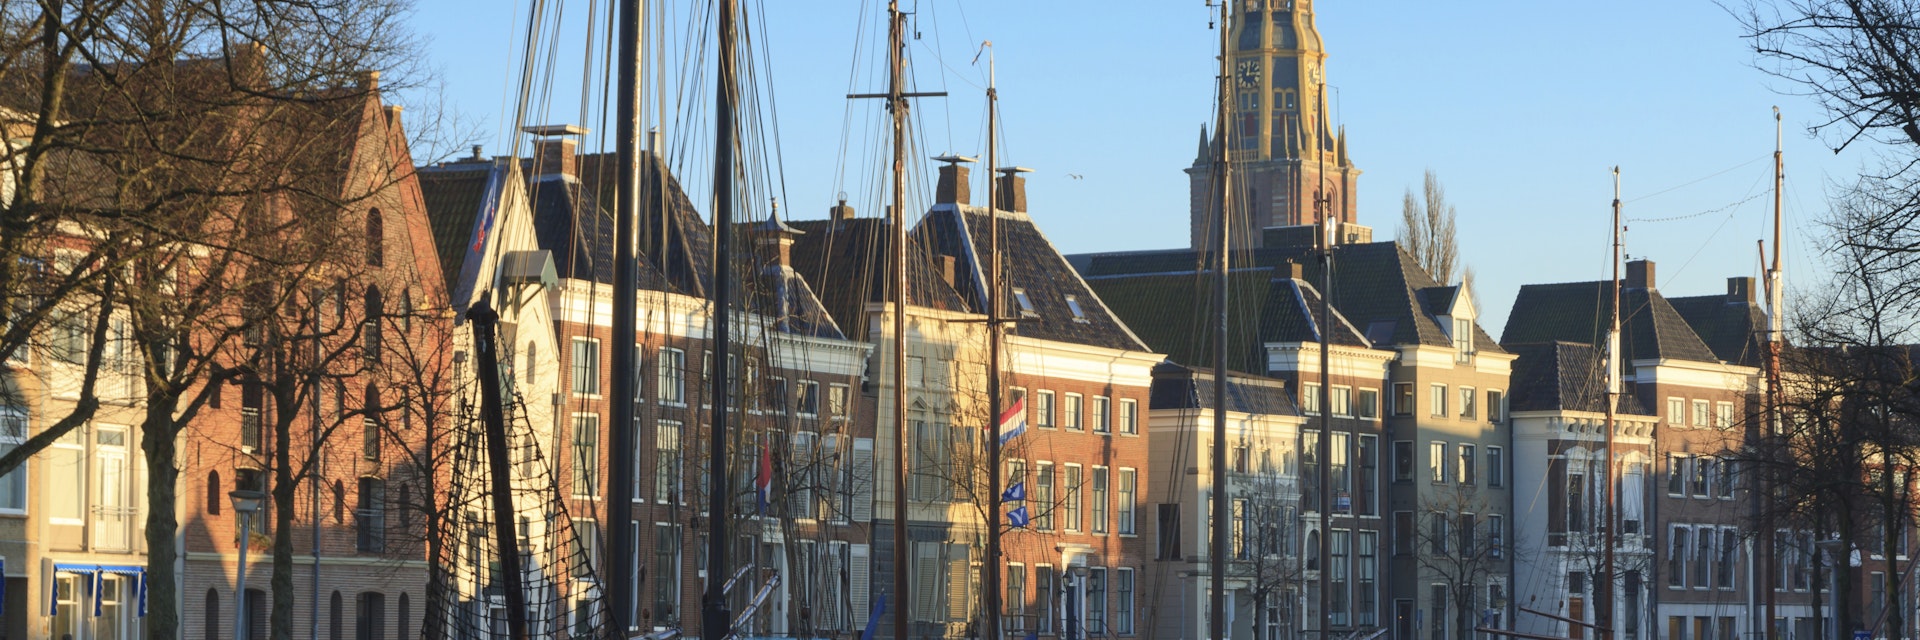 Ships in Groningen